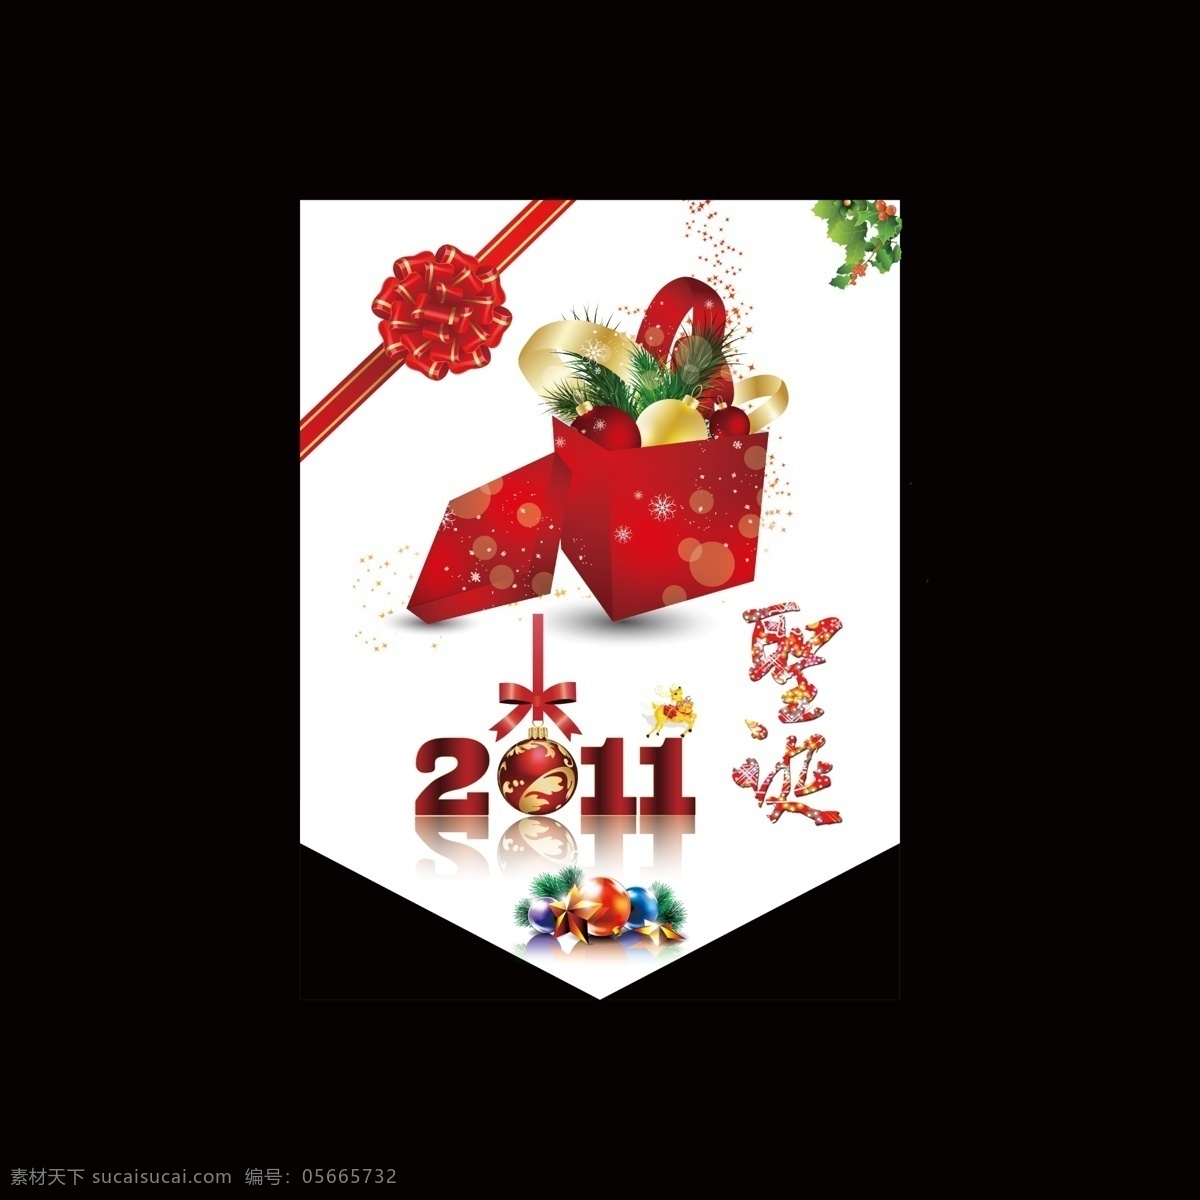 2011 淡雅 吊旗 广告设计模板 红色 花 礼物 圣诞吊旗 圣诞 丝带 箱子 红色箱子 源文件 其他海报设计